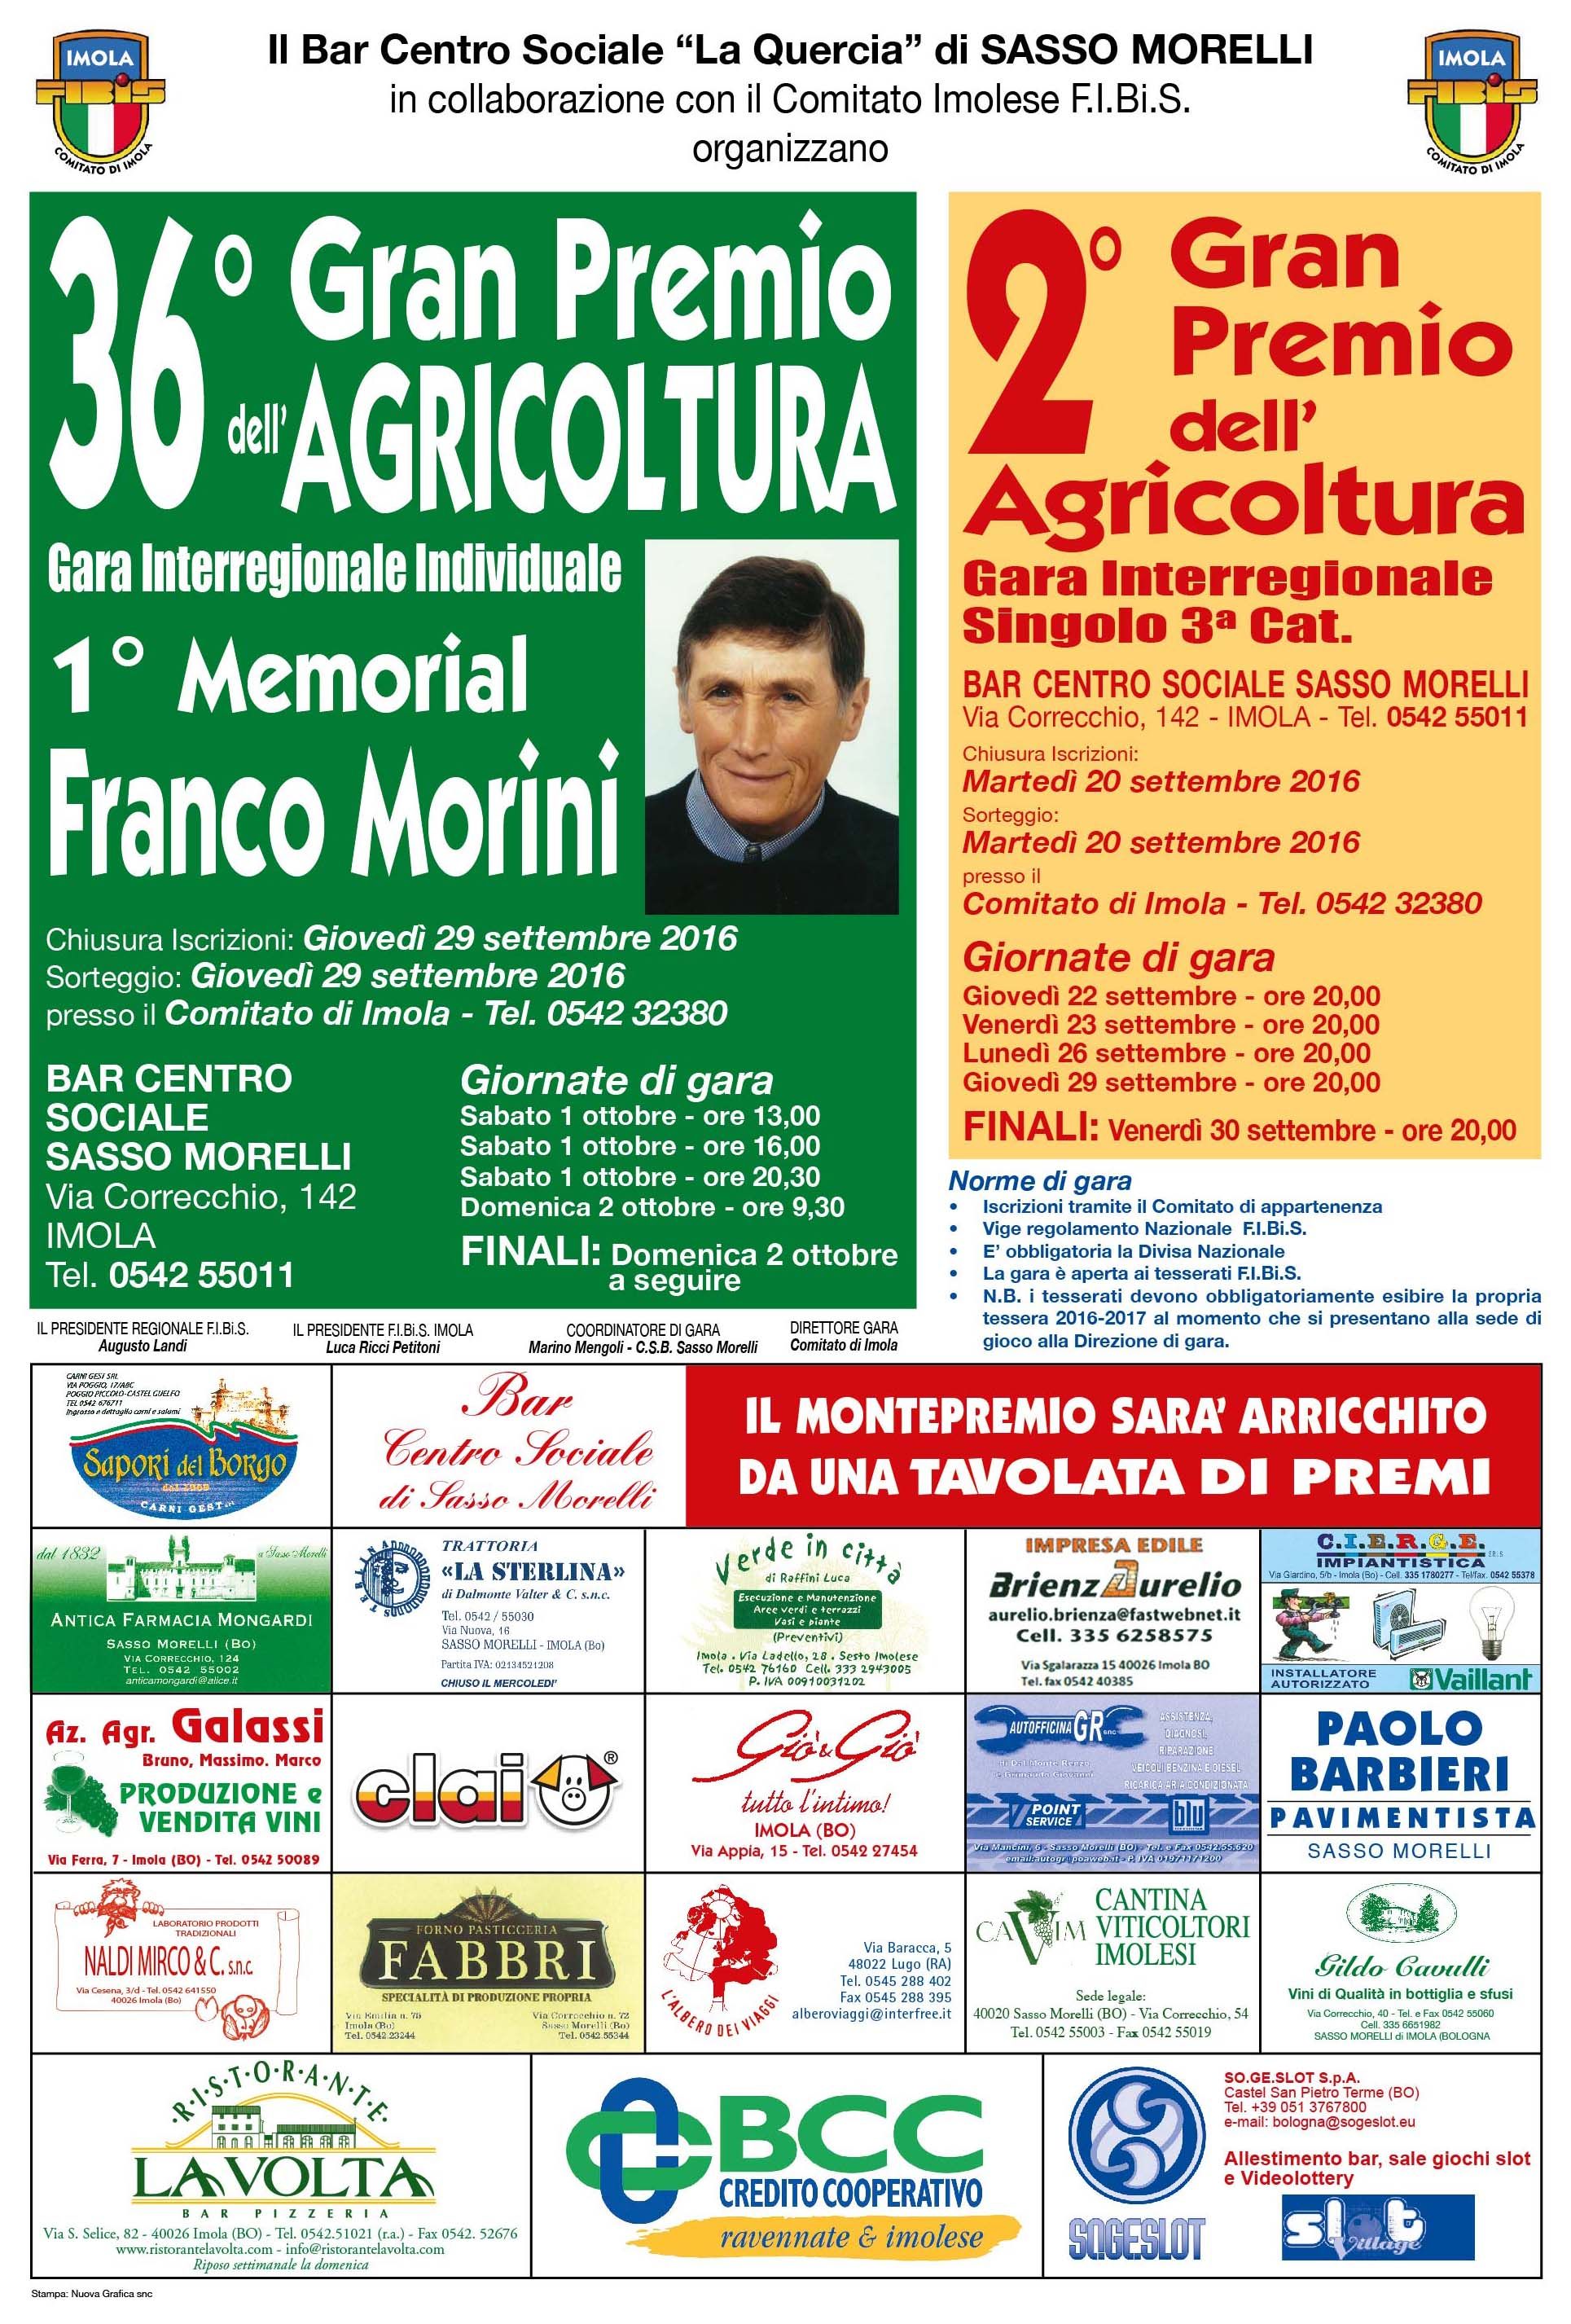 36° Gran Premio Agricoltura (Gara interregionale Individuale)